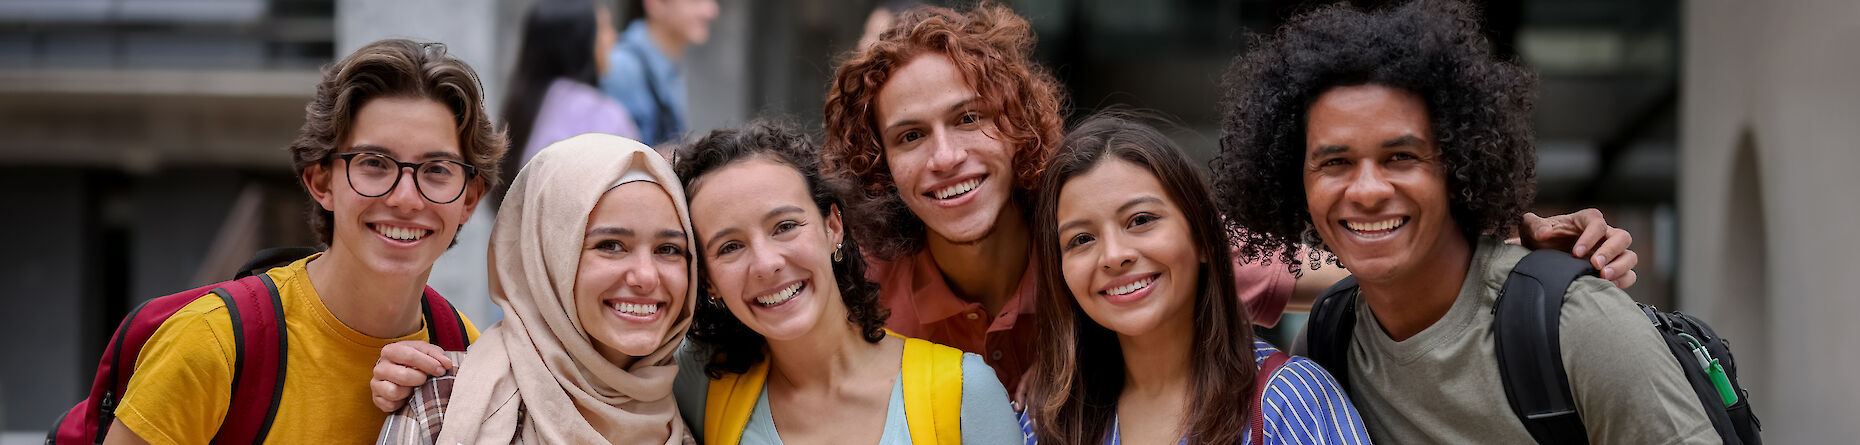 Eine multikulturelle Gruppe von Jugendlichen, die lächelnd in die Kamera schauen.